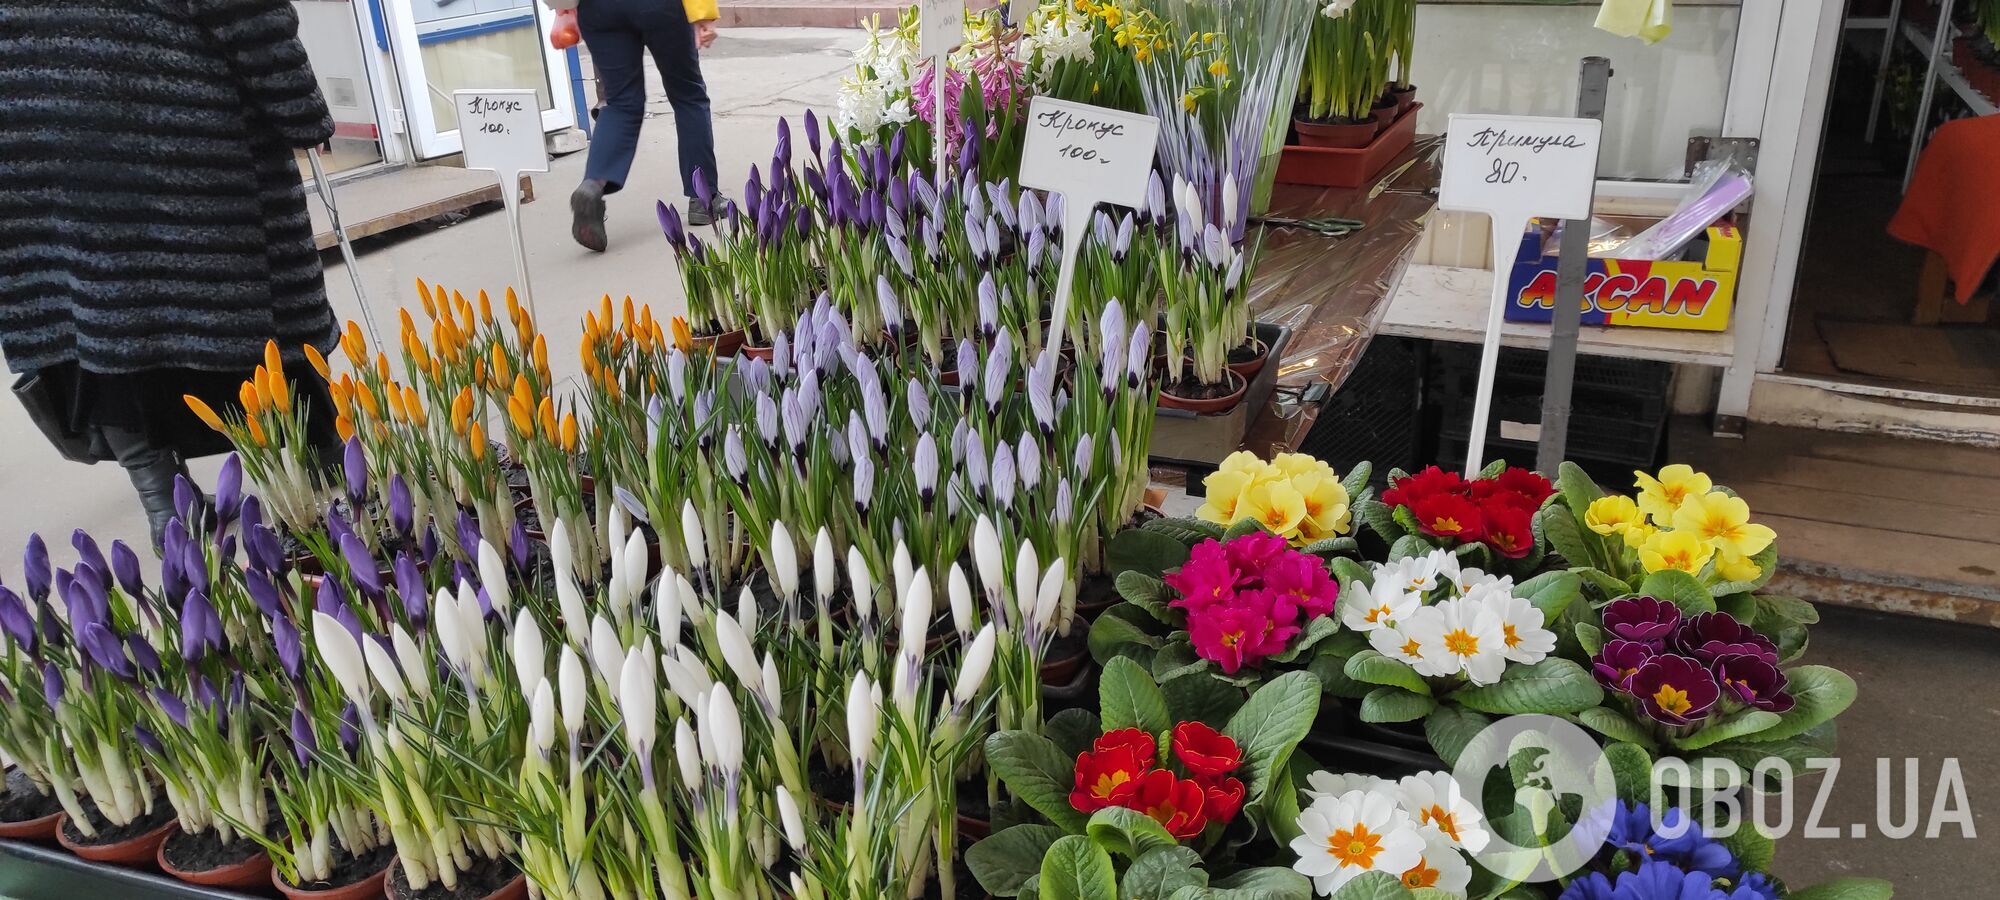 В Киеве к 8-му марта тюльпаны продают за 25 гривен, а нарциссы – по 150